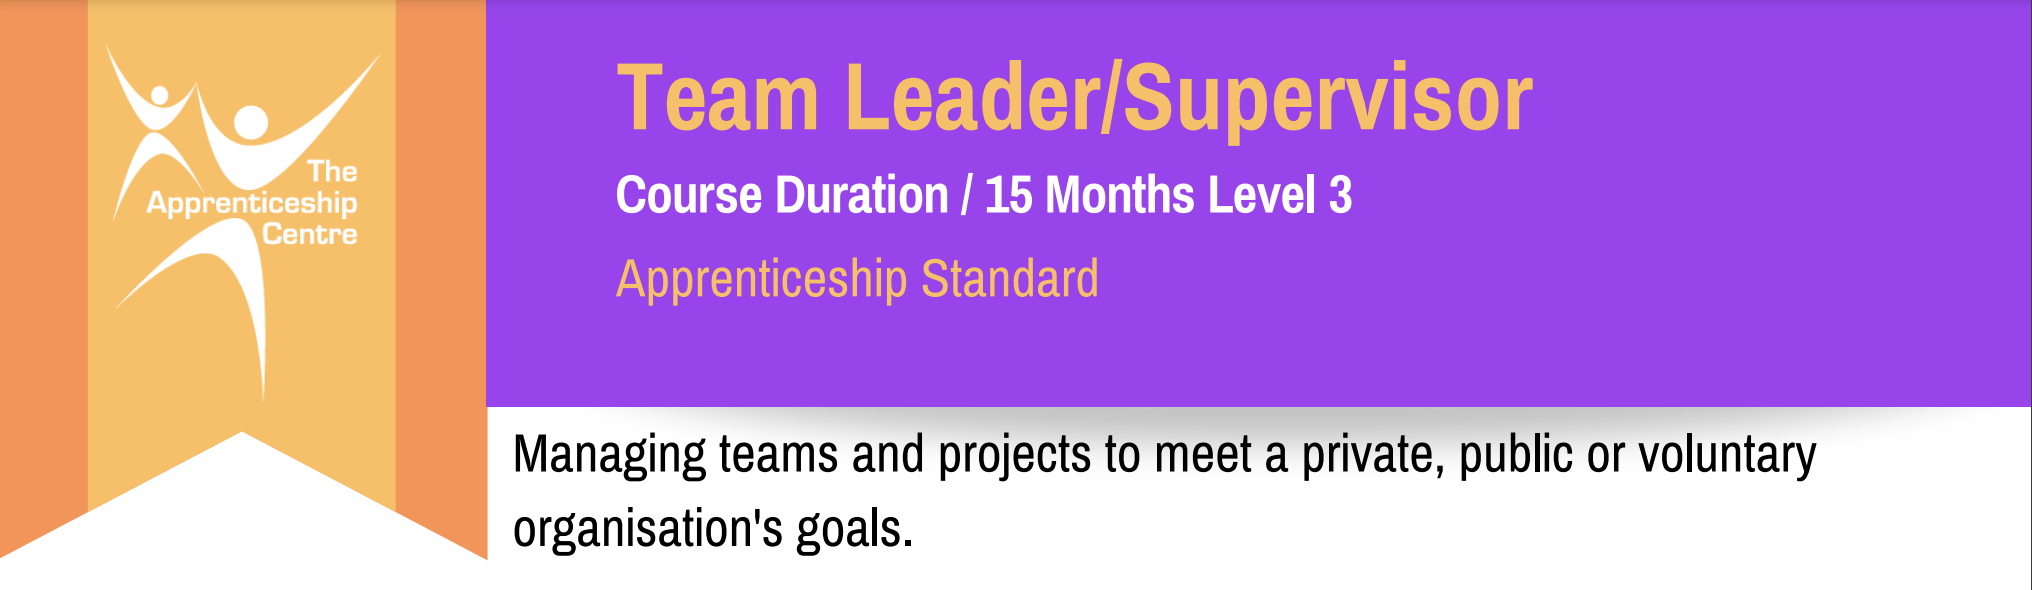 Team Leader/Supervisor Level 3